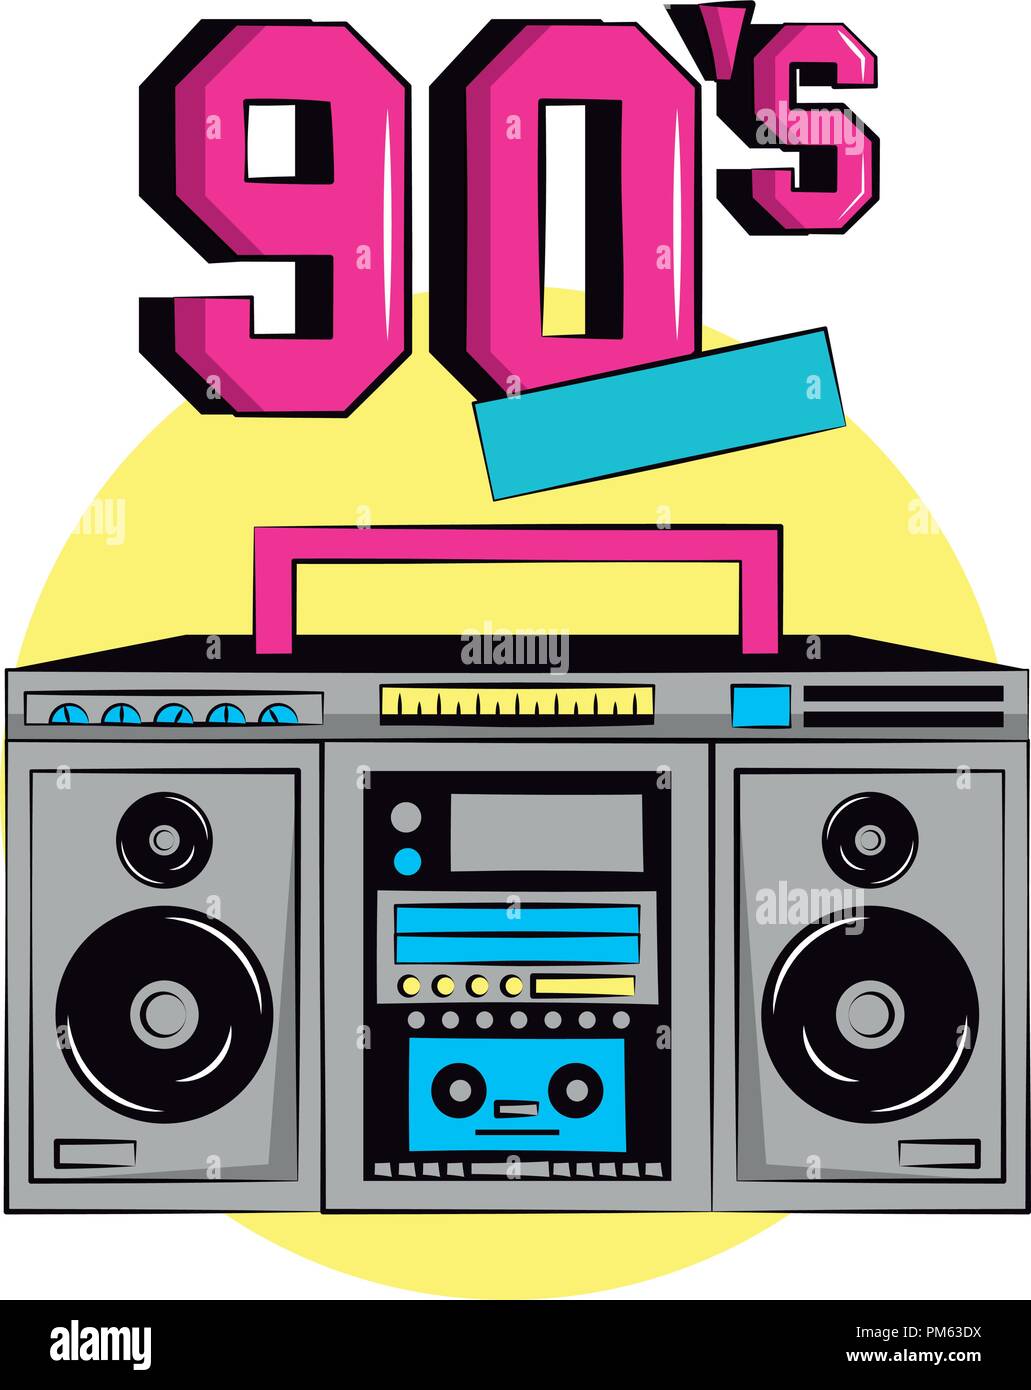 90s Retro radio Stereo Stock-Vektorgrafik - Alamy